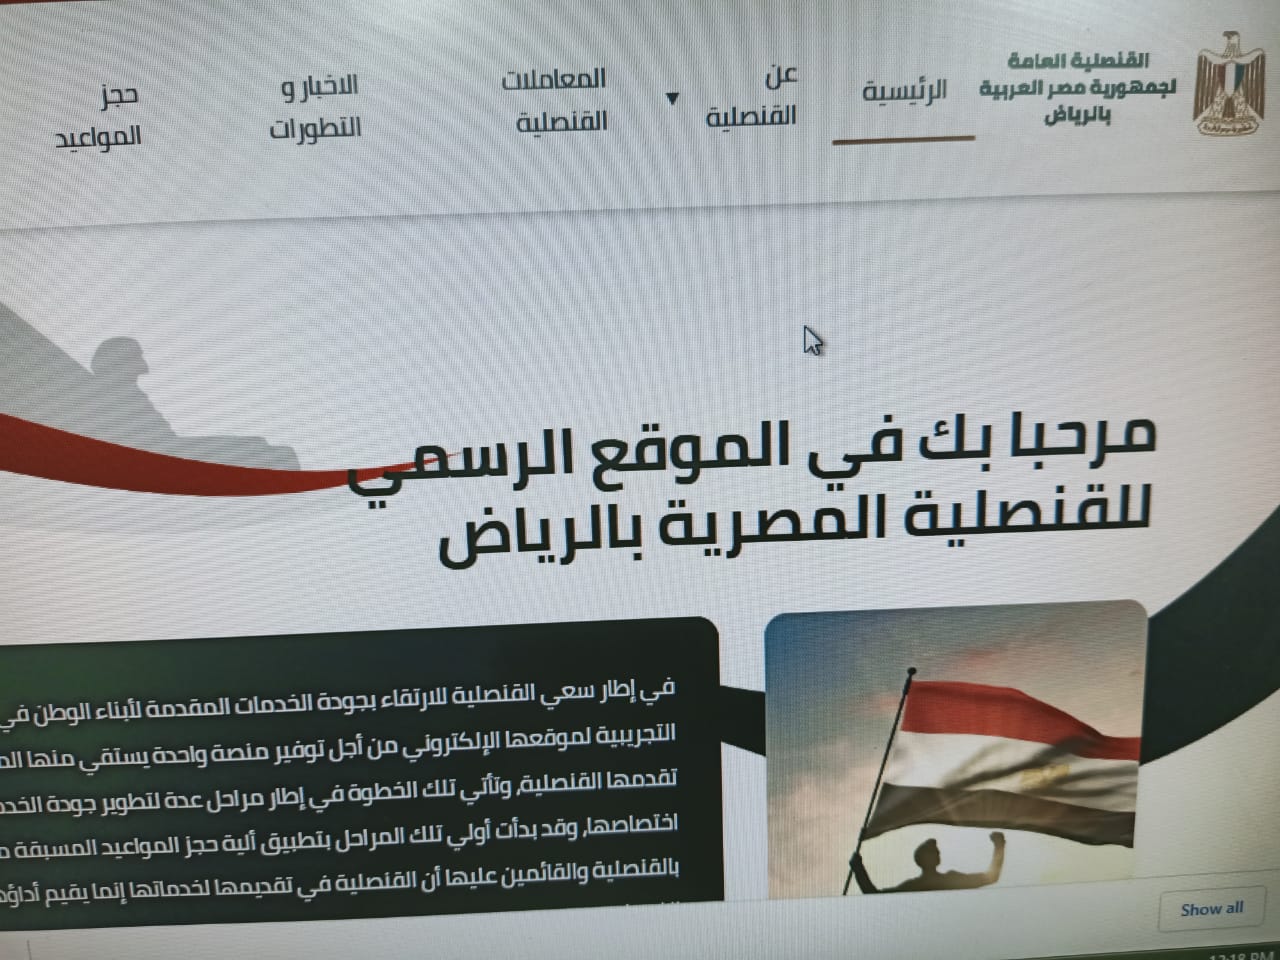   قنصلية مصر في الرياض تدشن موقعا إلكترونيا جديدا لتسهيل تقديم خدماتها